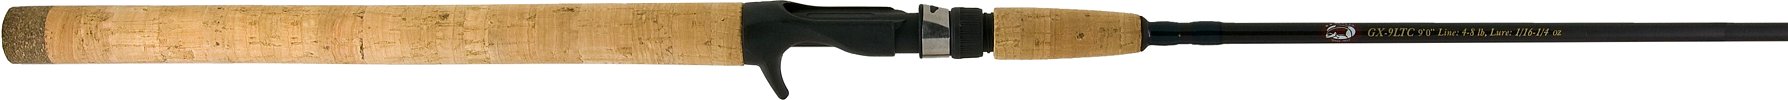 GX9LTC     9'0"   2 pc 2-8 lb   Cast   W.W. Grigg Salmon Rod